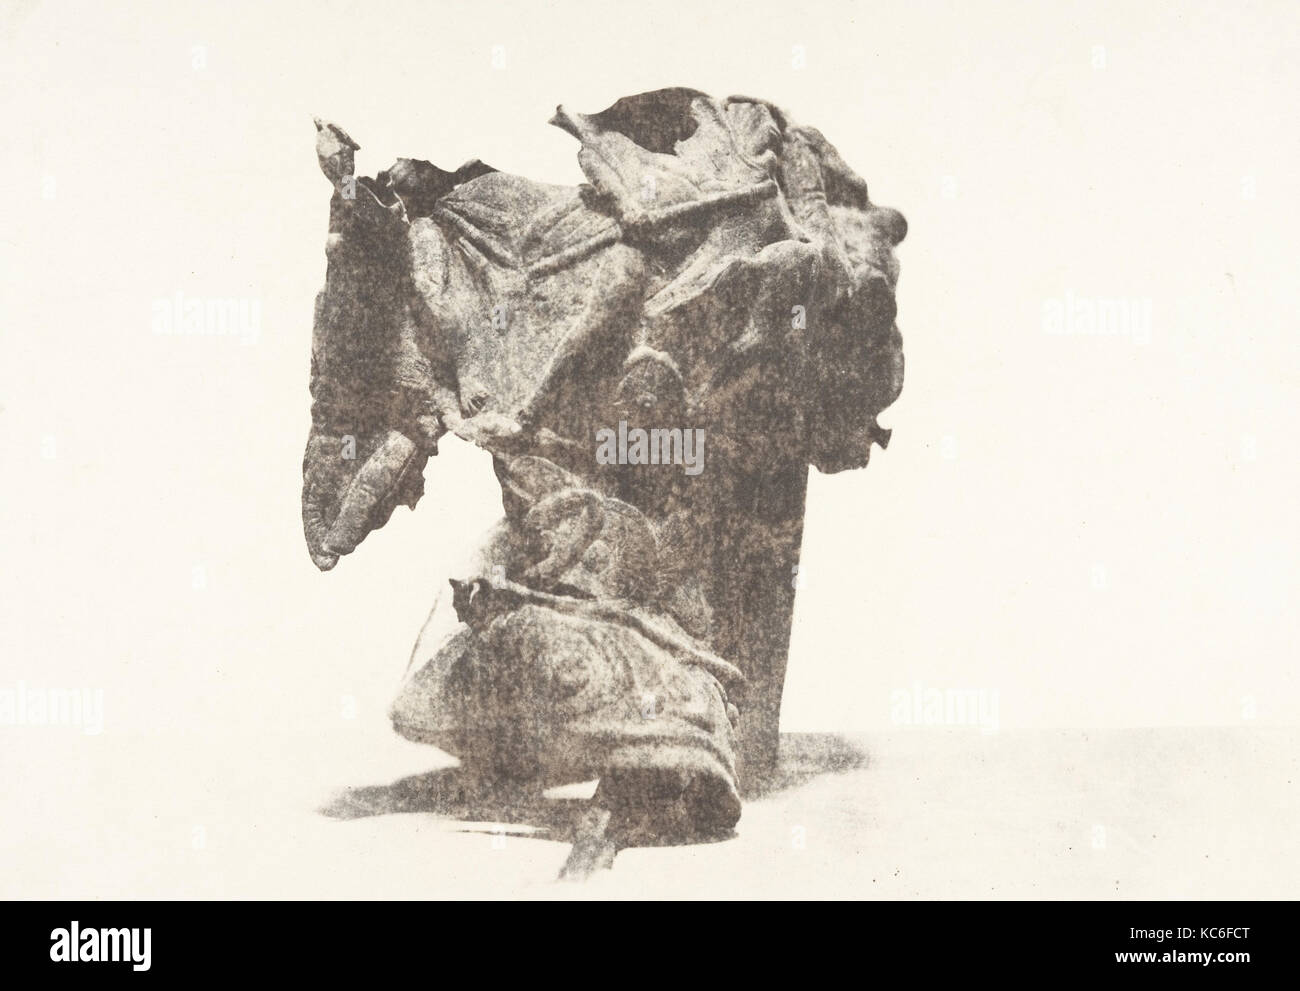 Jérusalem, Casque trouvé dans le Jourdain, 2, Auguste Salzmann, 1854 Foto Stock